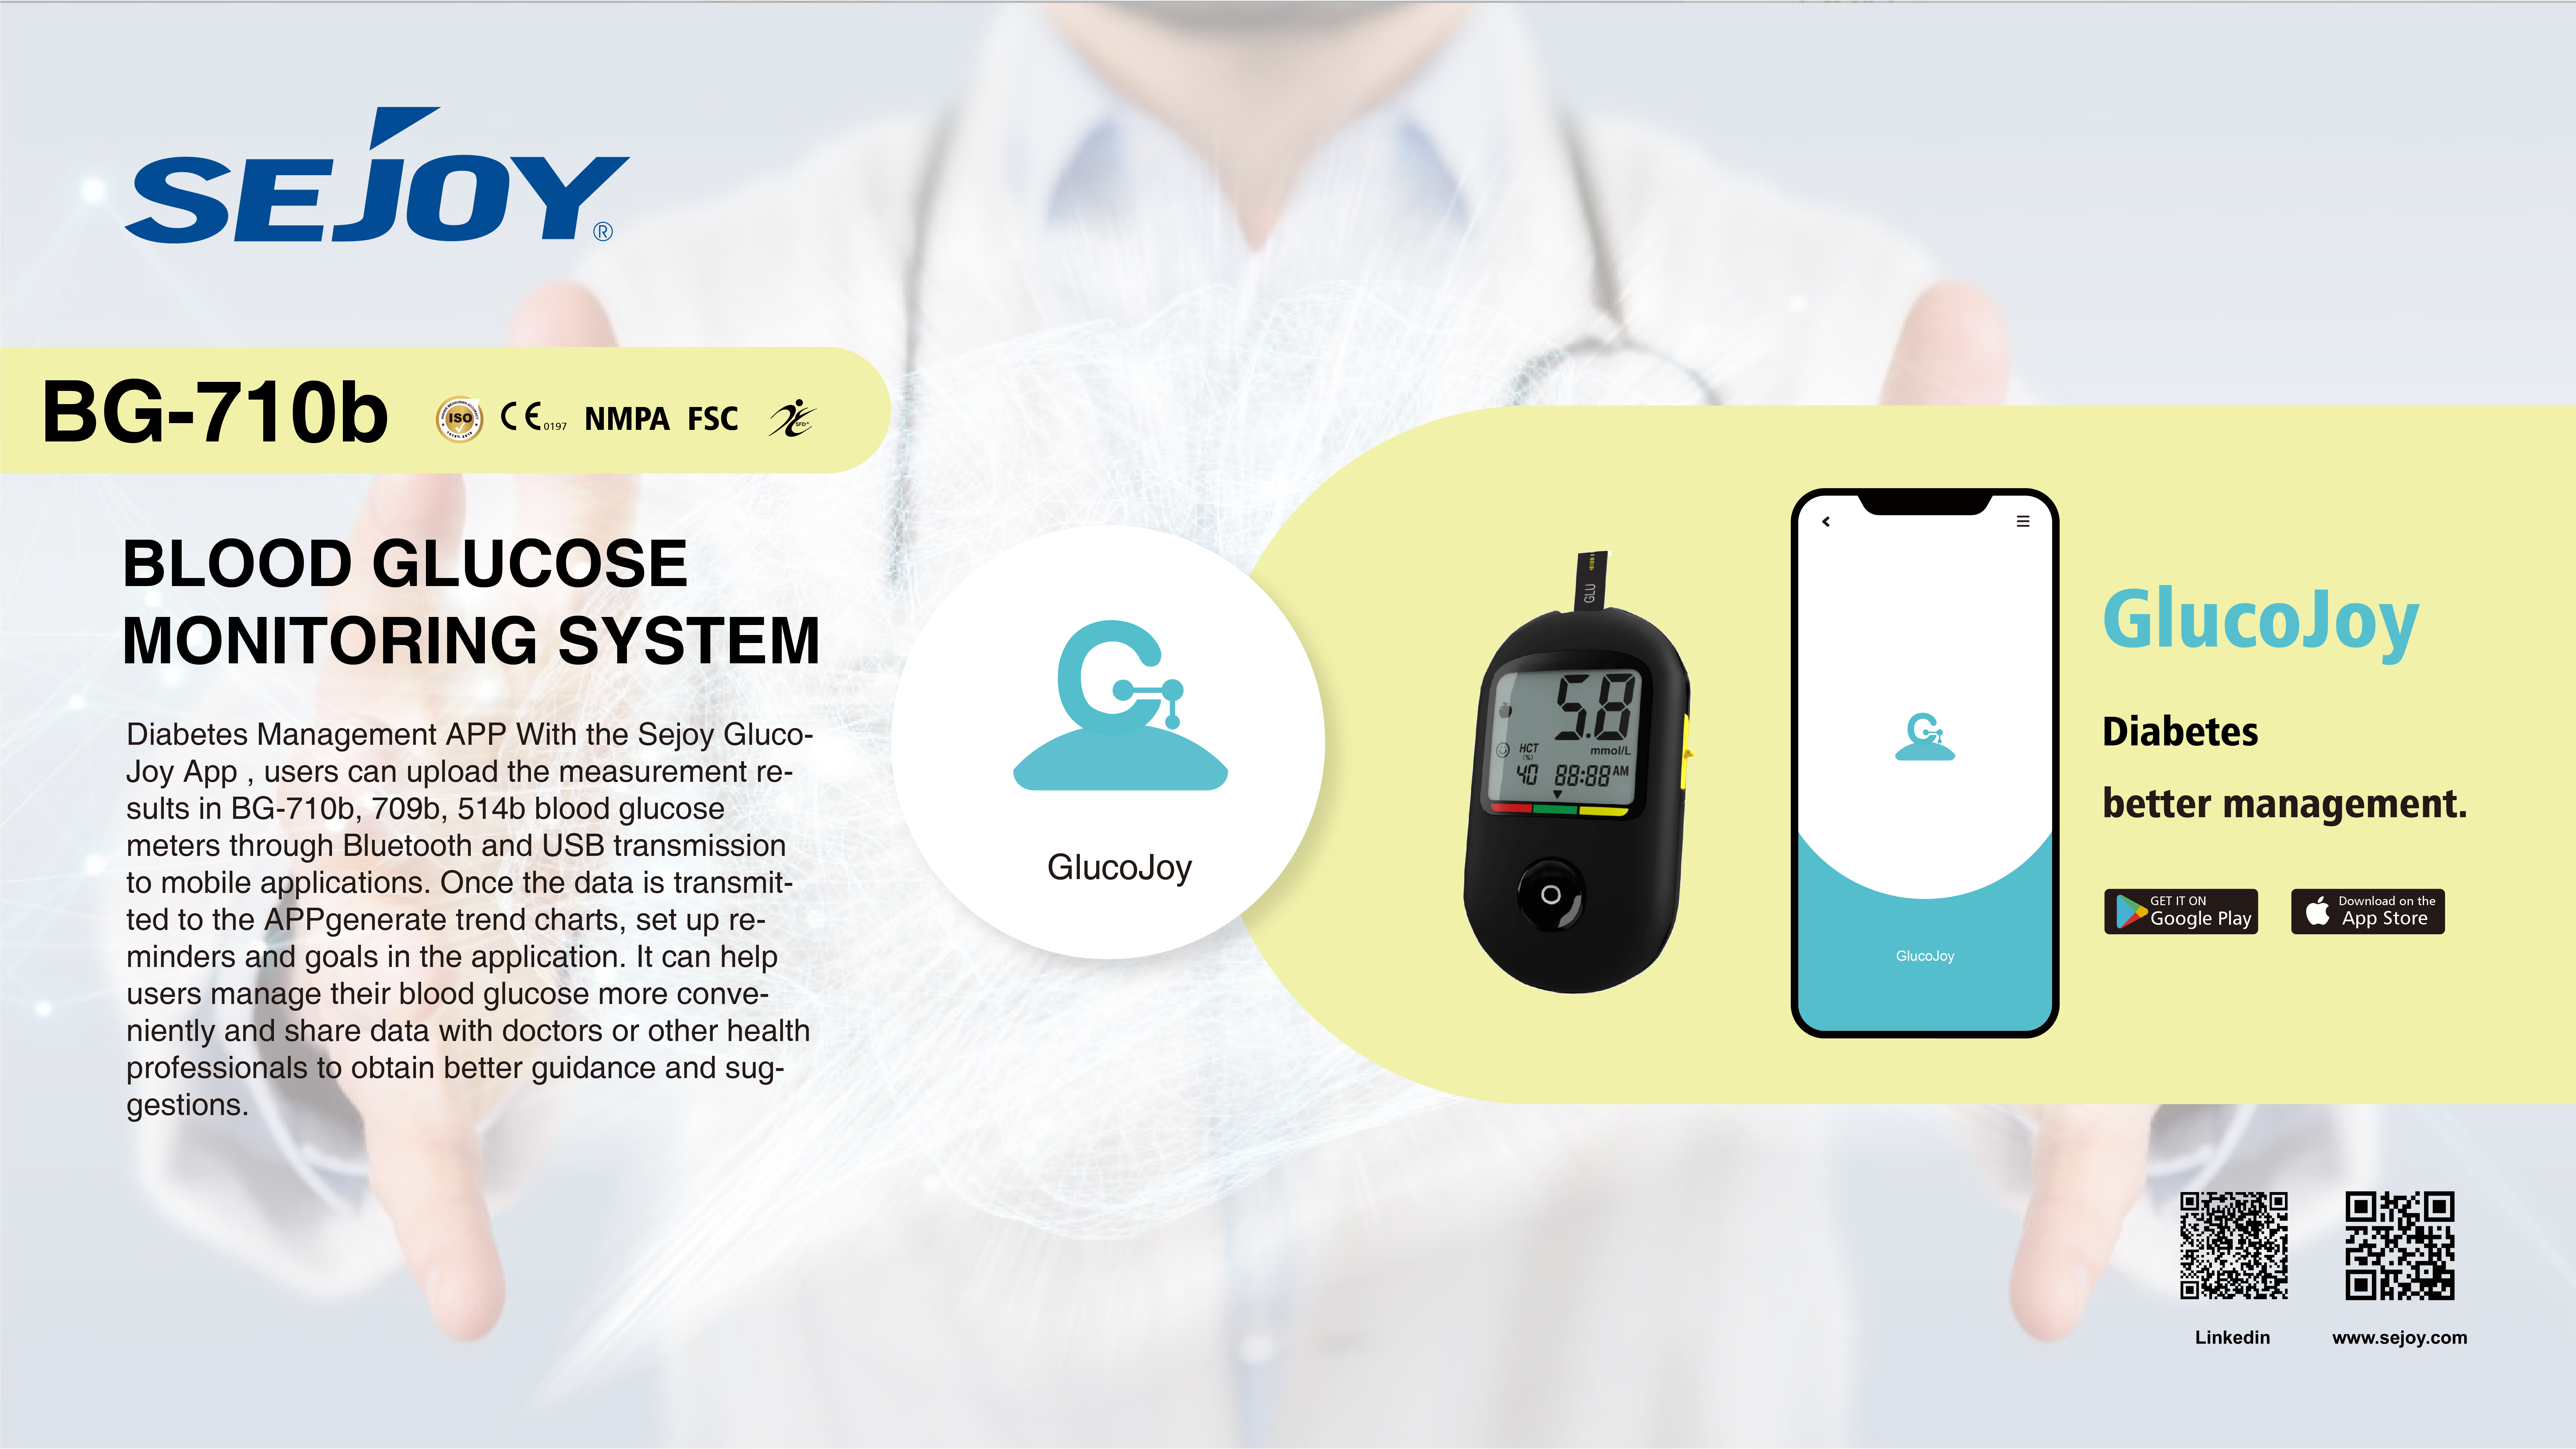 更好的糖尿病管理 – Sejoy BG-710b 血糖监测系统